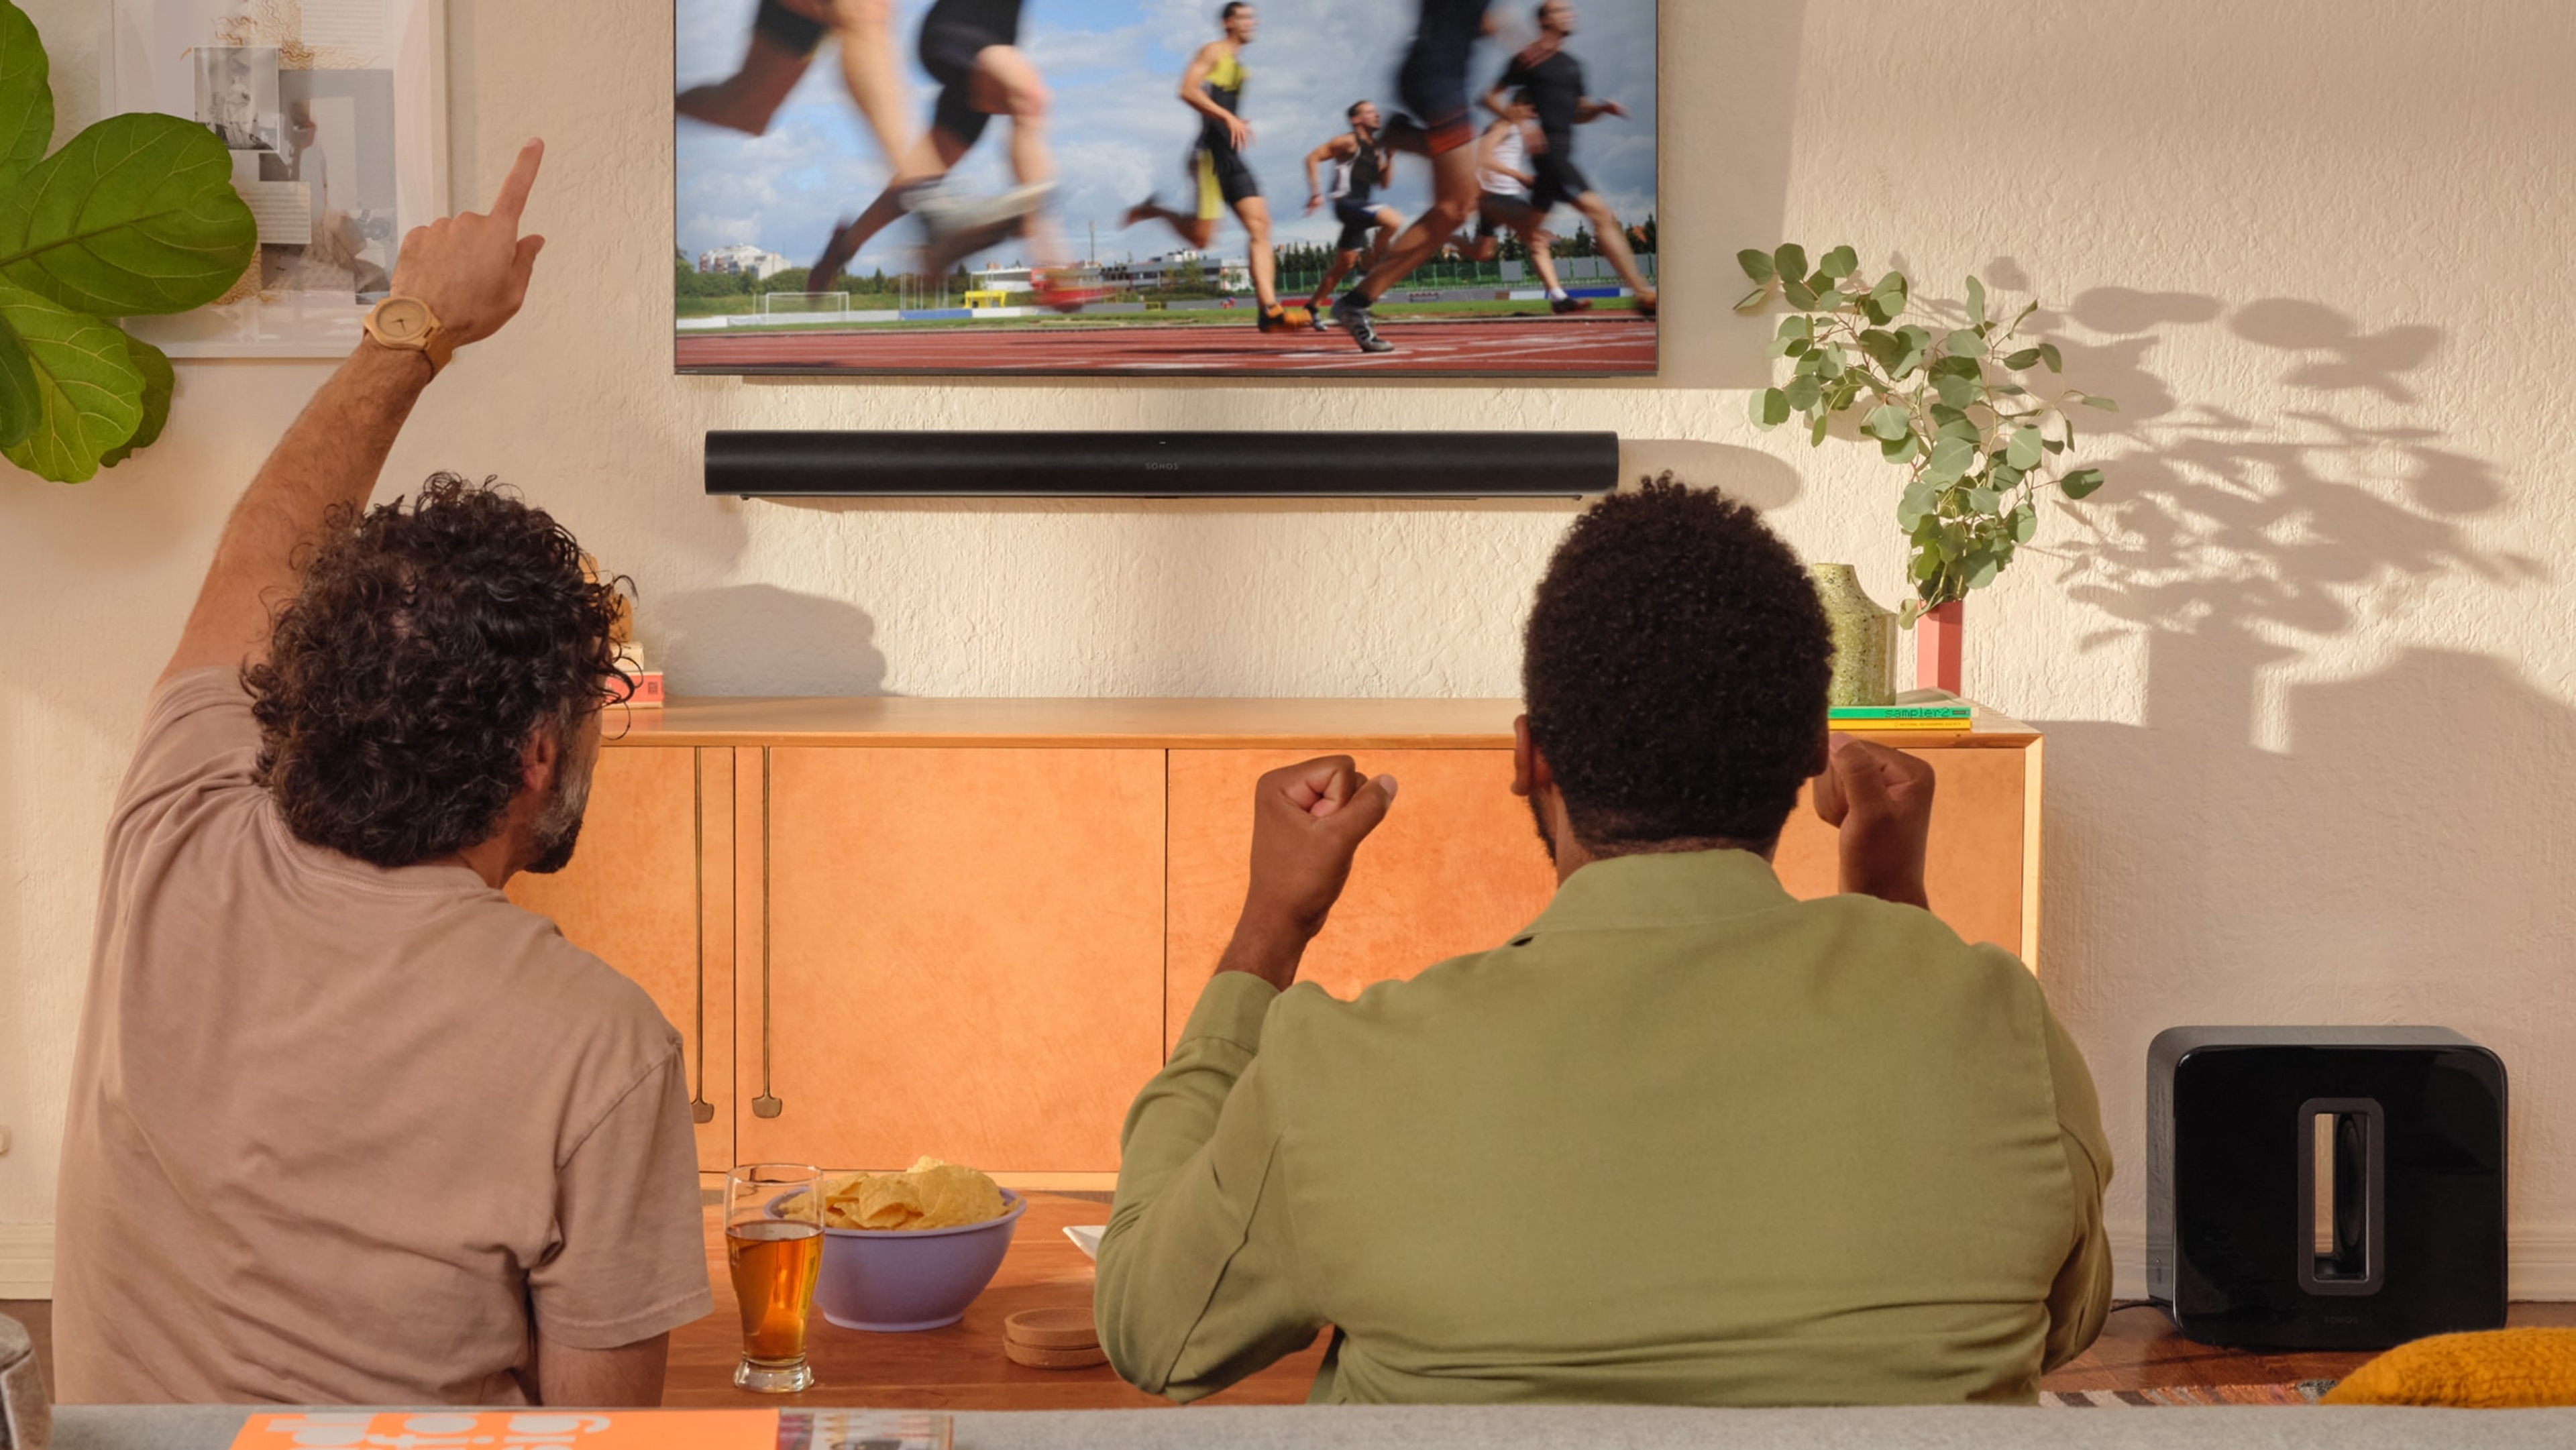 Kaksi ihmistä katsoo yleisurheilua televisiosta, jossa käytetään mustia Arc- ja Sub -kaiuttimia